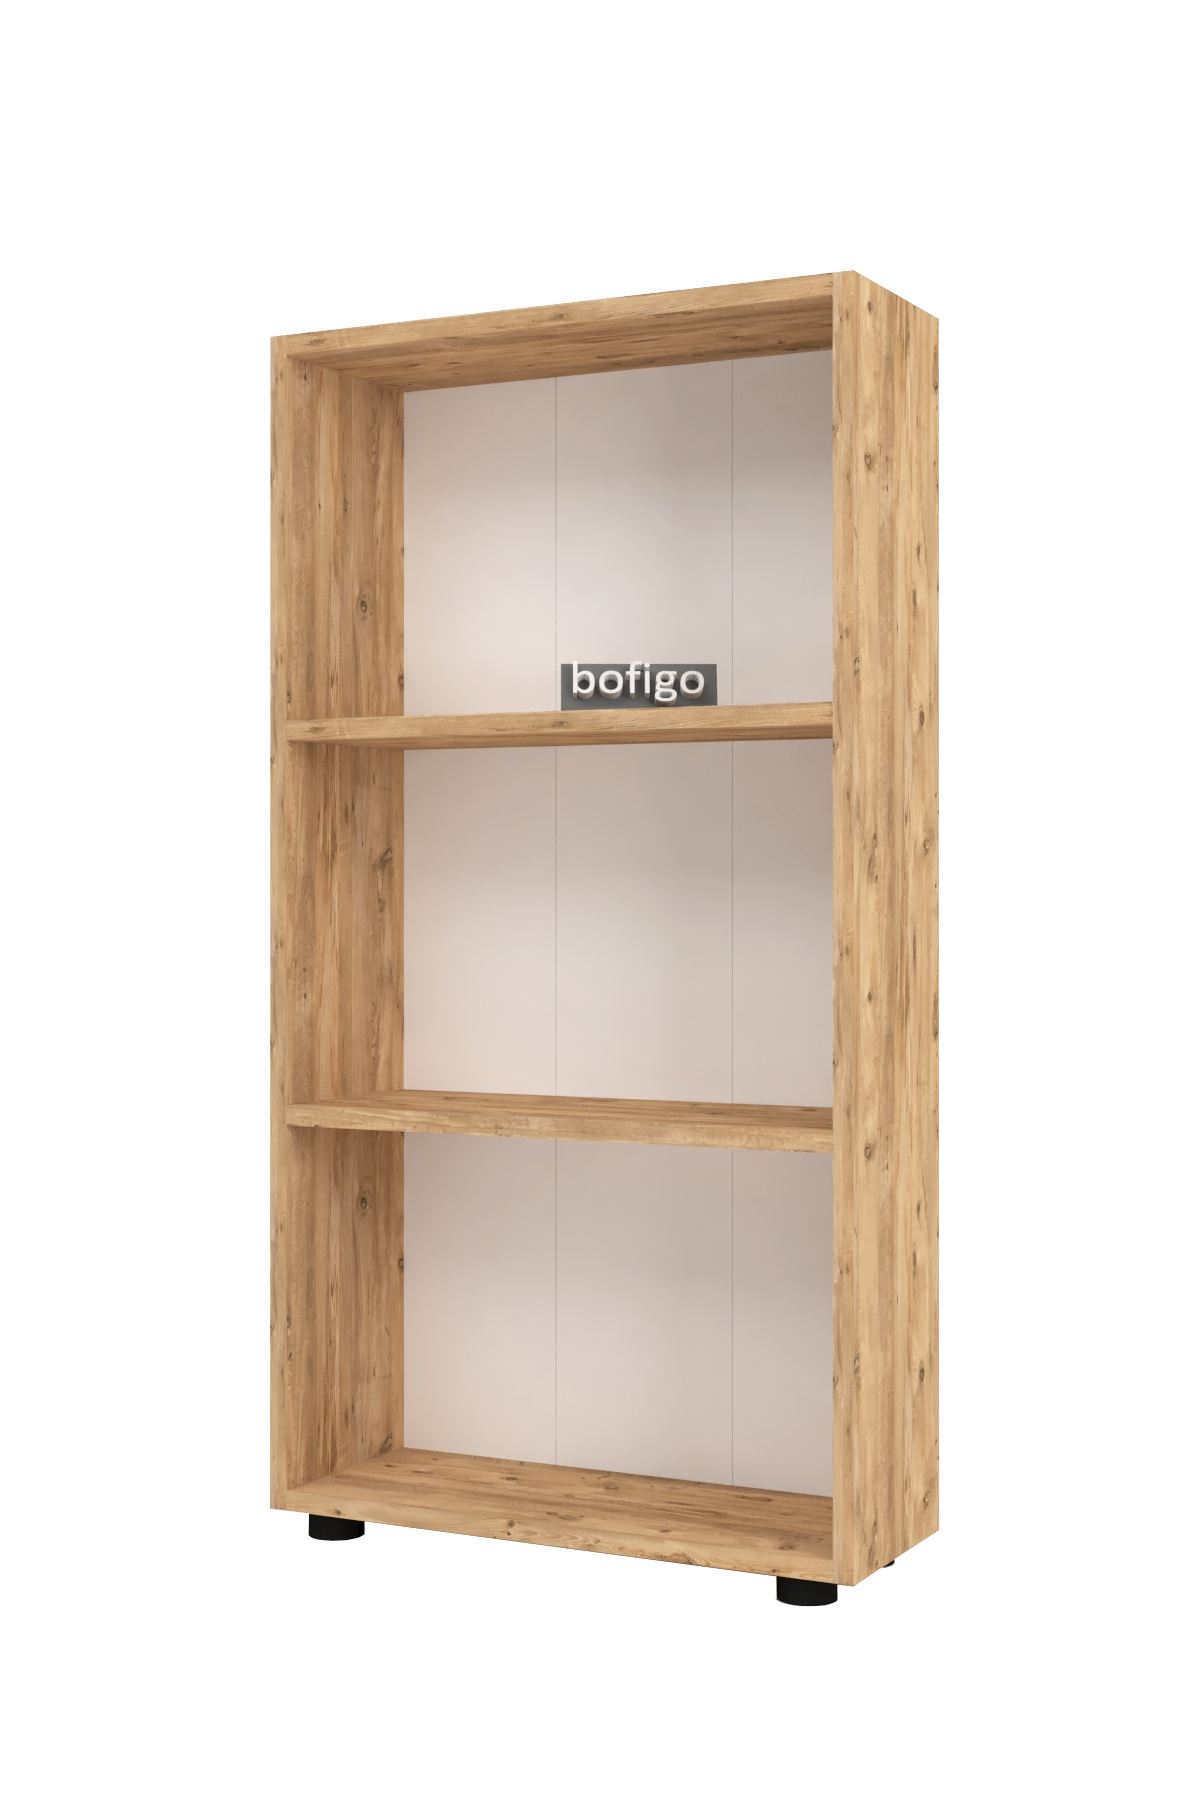 Bofigo Decorative 3 Shelves Bookcase Pine